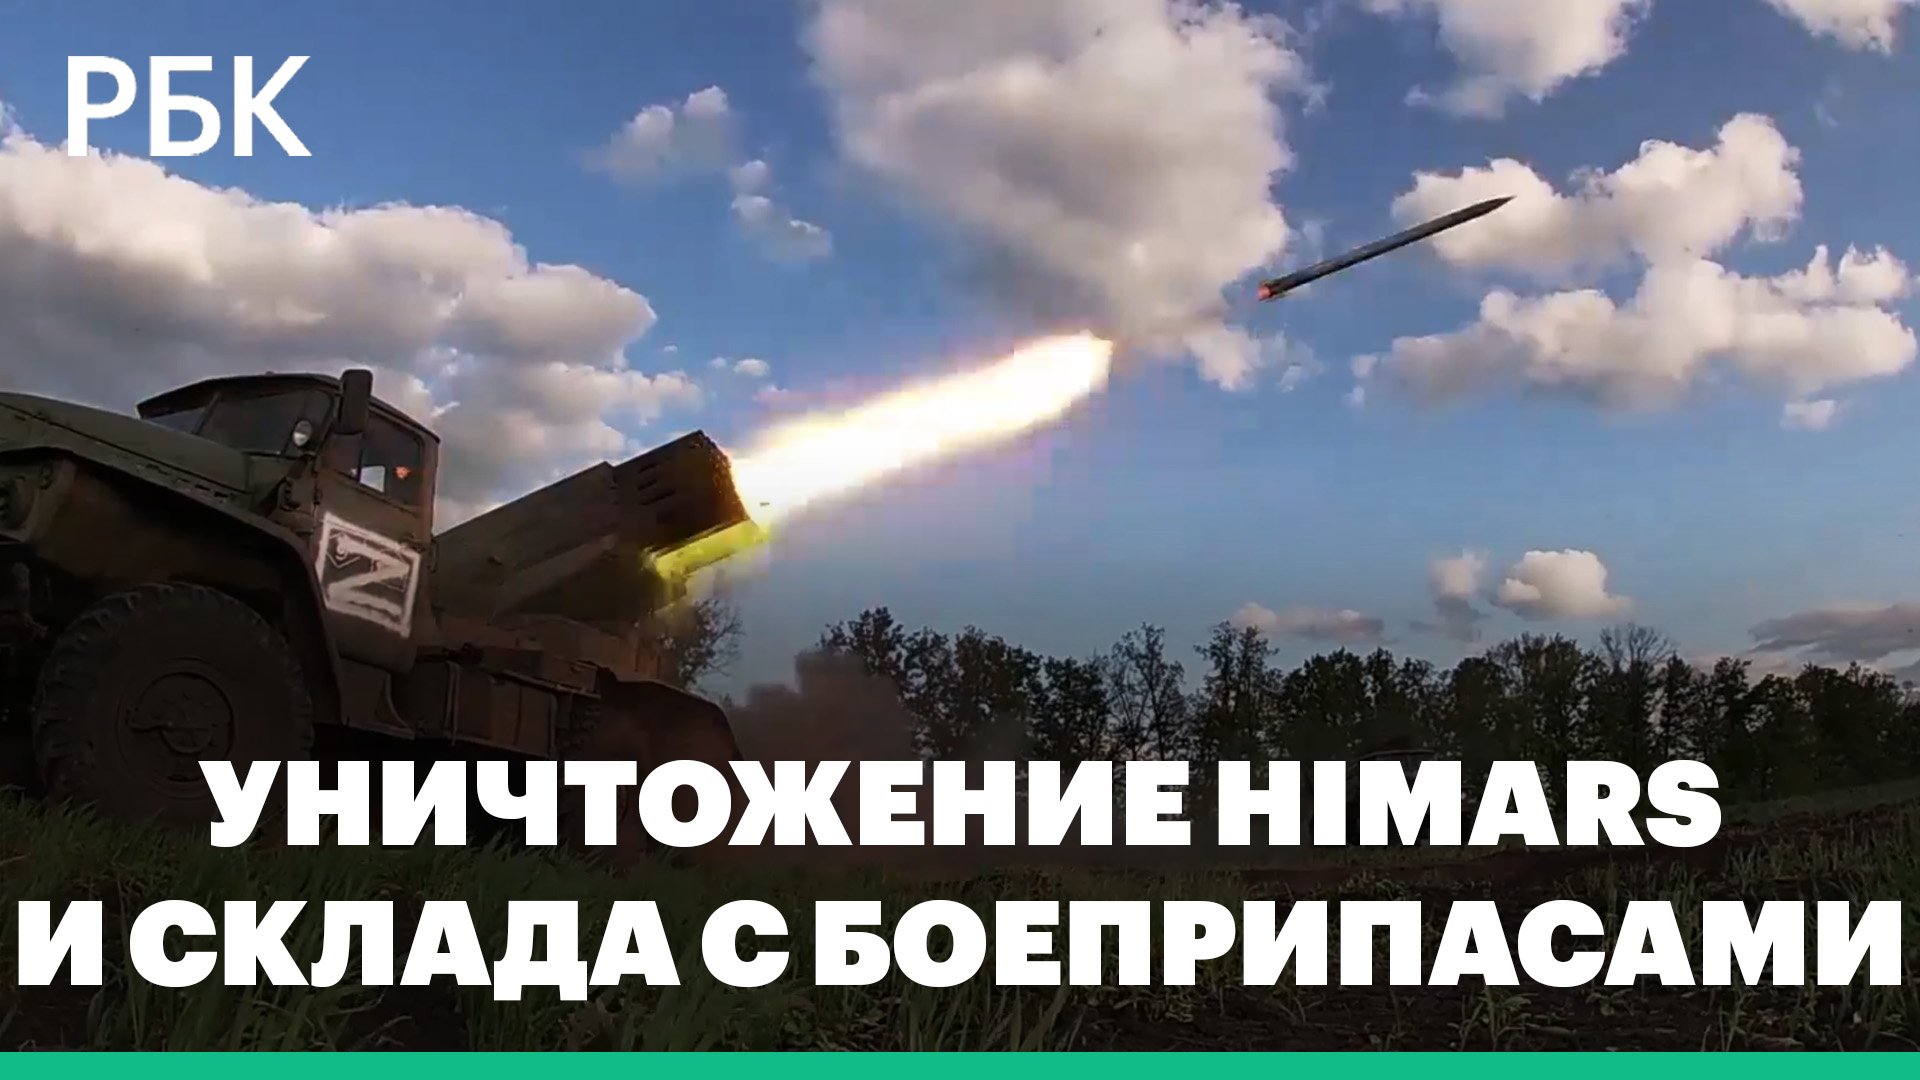 В ДНР уничтожены пусковая установка HIMARS и склад c боеприпасами